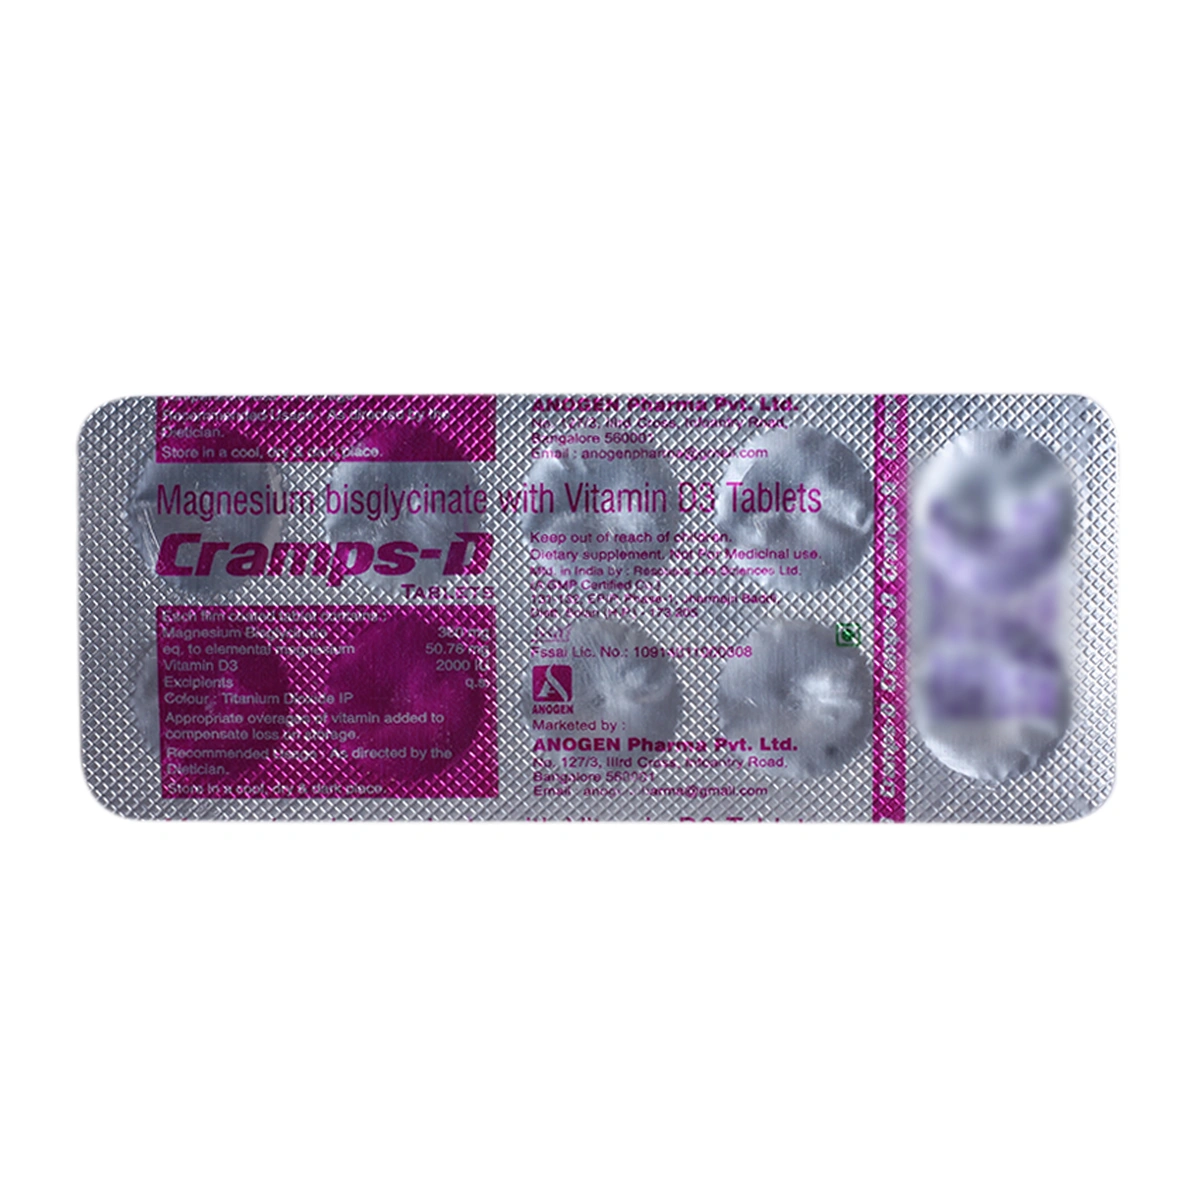 Cramps-D Tablet